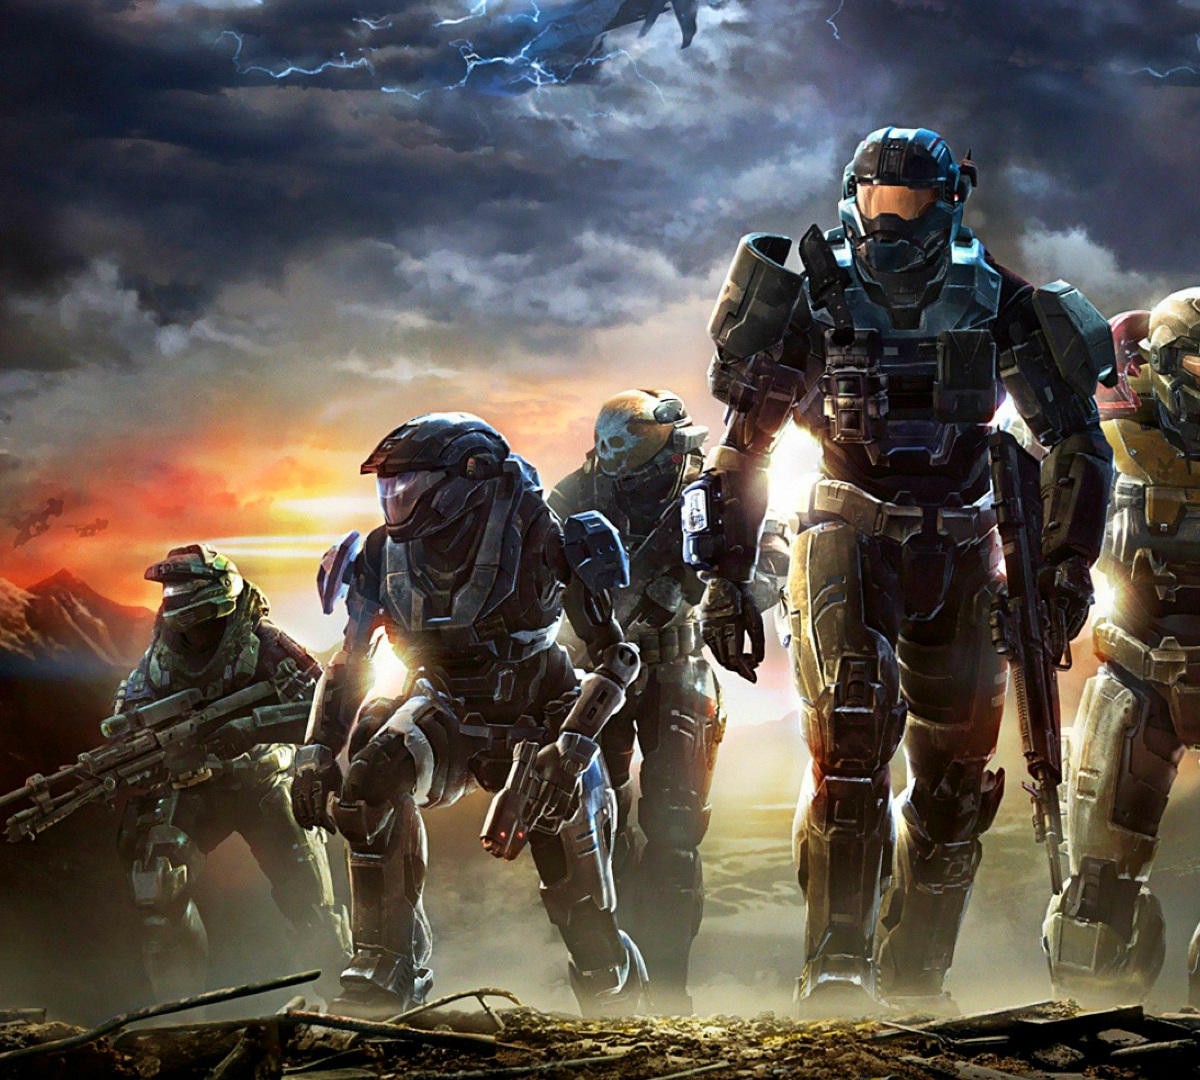 Fim de uma era! Servidores de todos os jogos Halo de Xbox 360 são